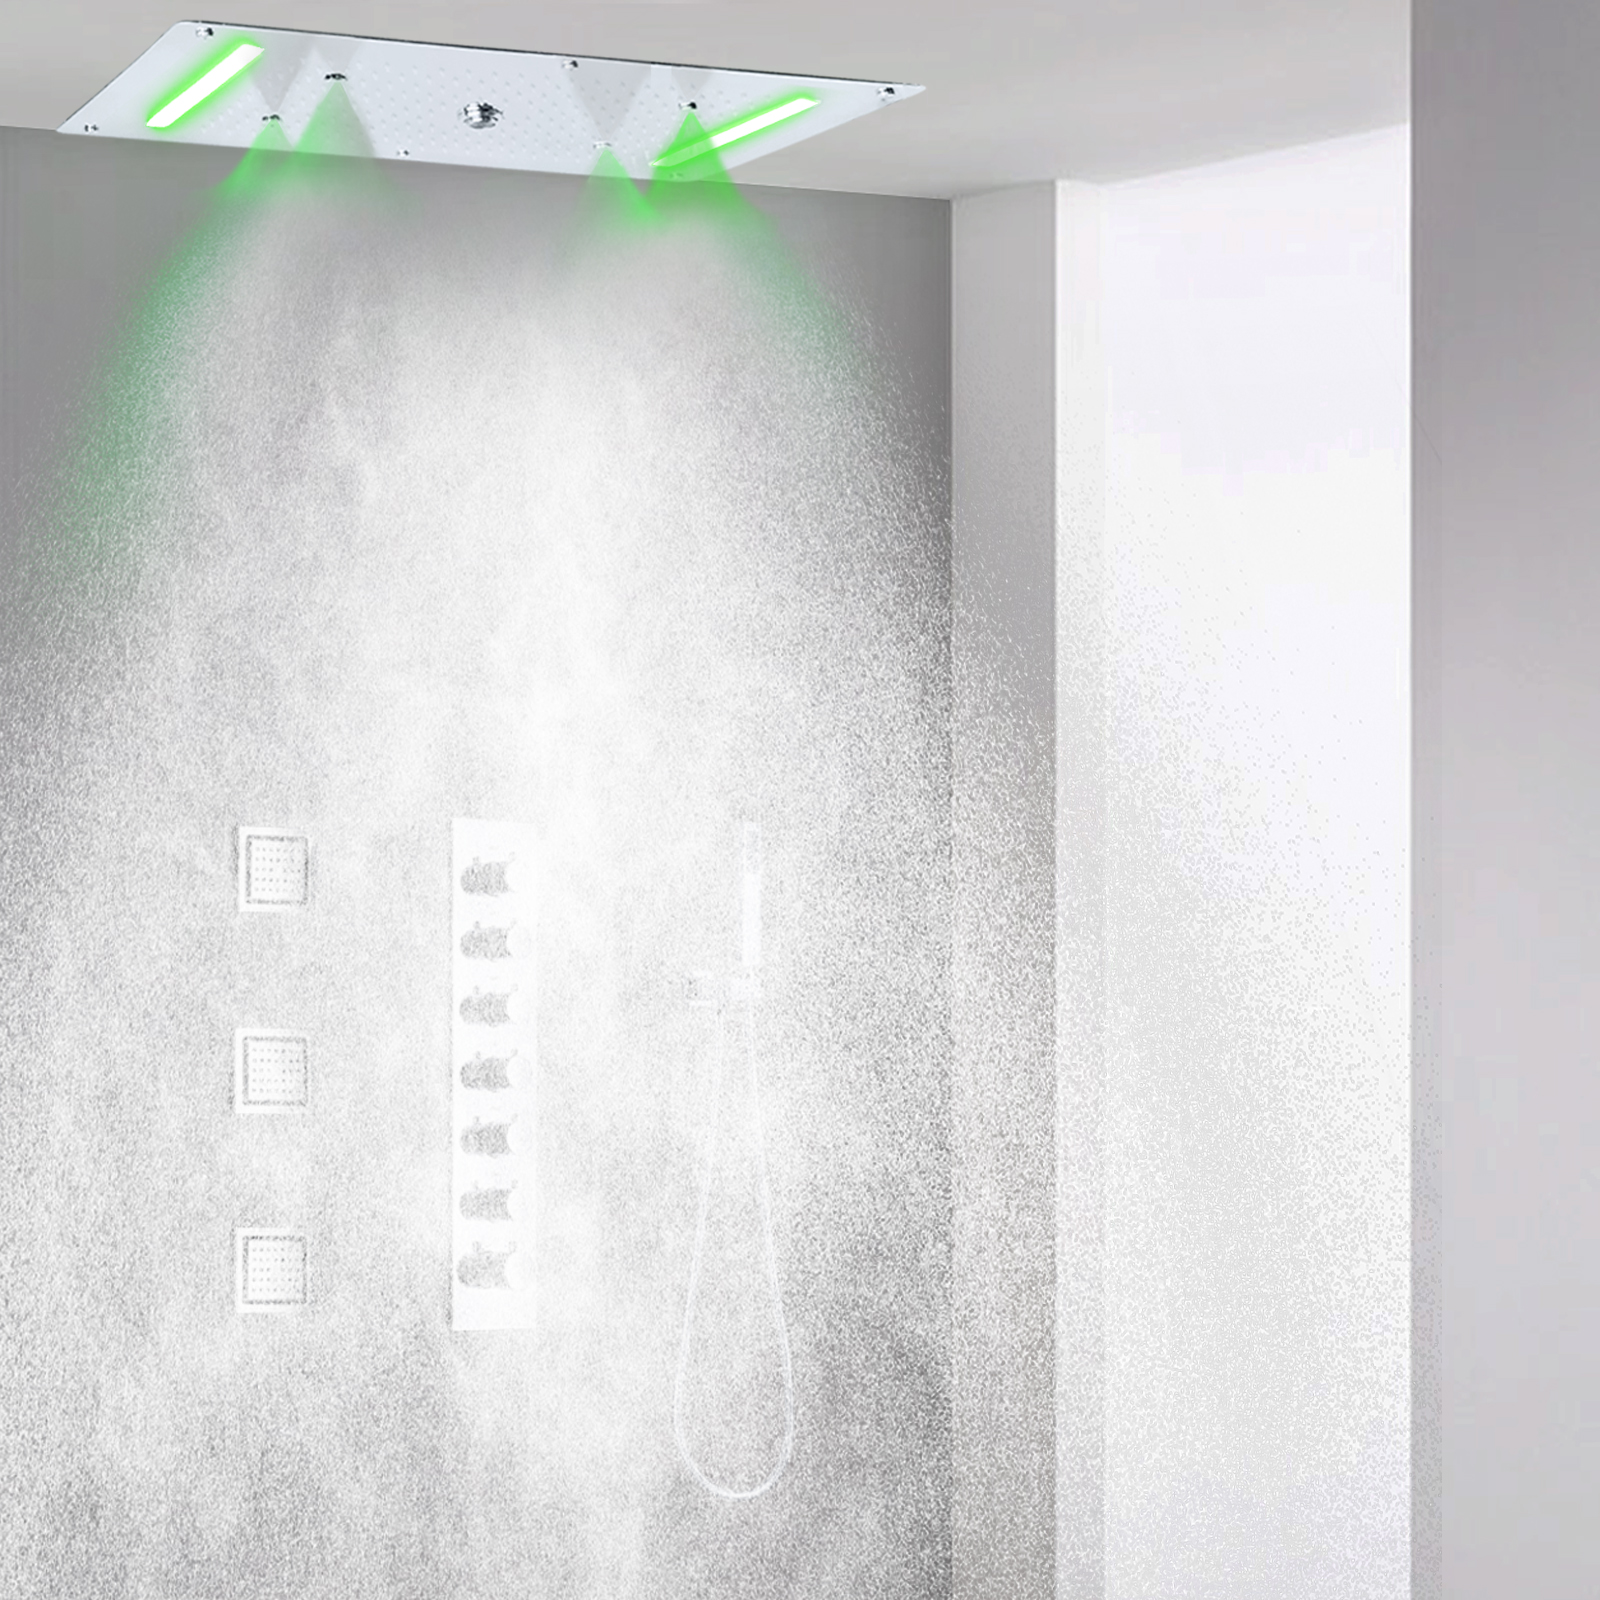 LED cromado cascada ducha sistema de ducha de lluvia baño columna de ducha oculta juego de grifo de nebulización